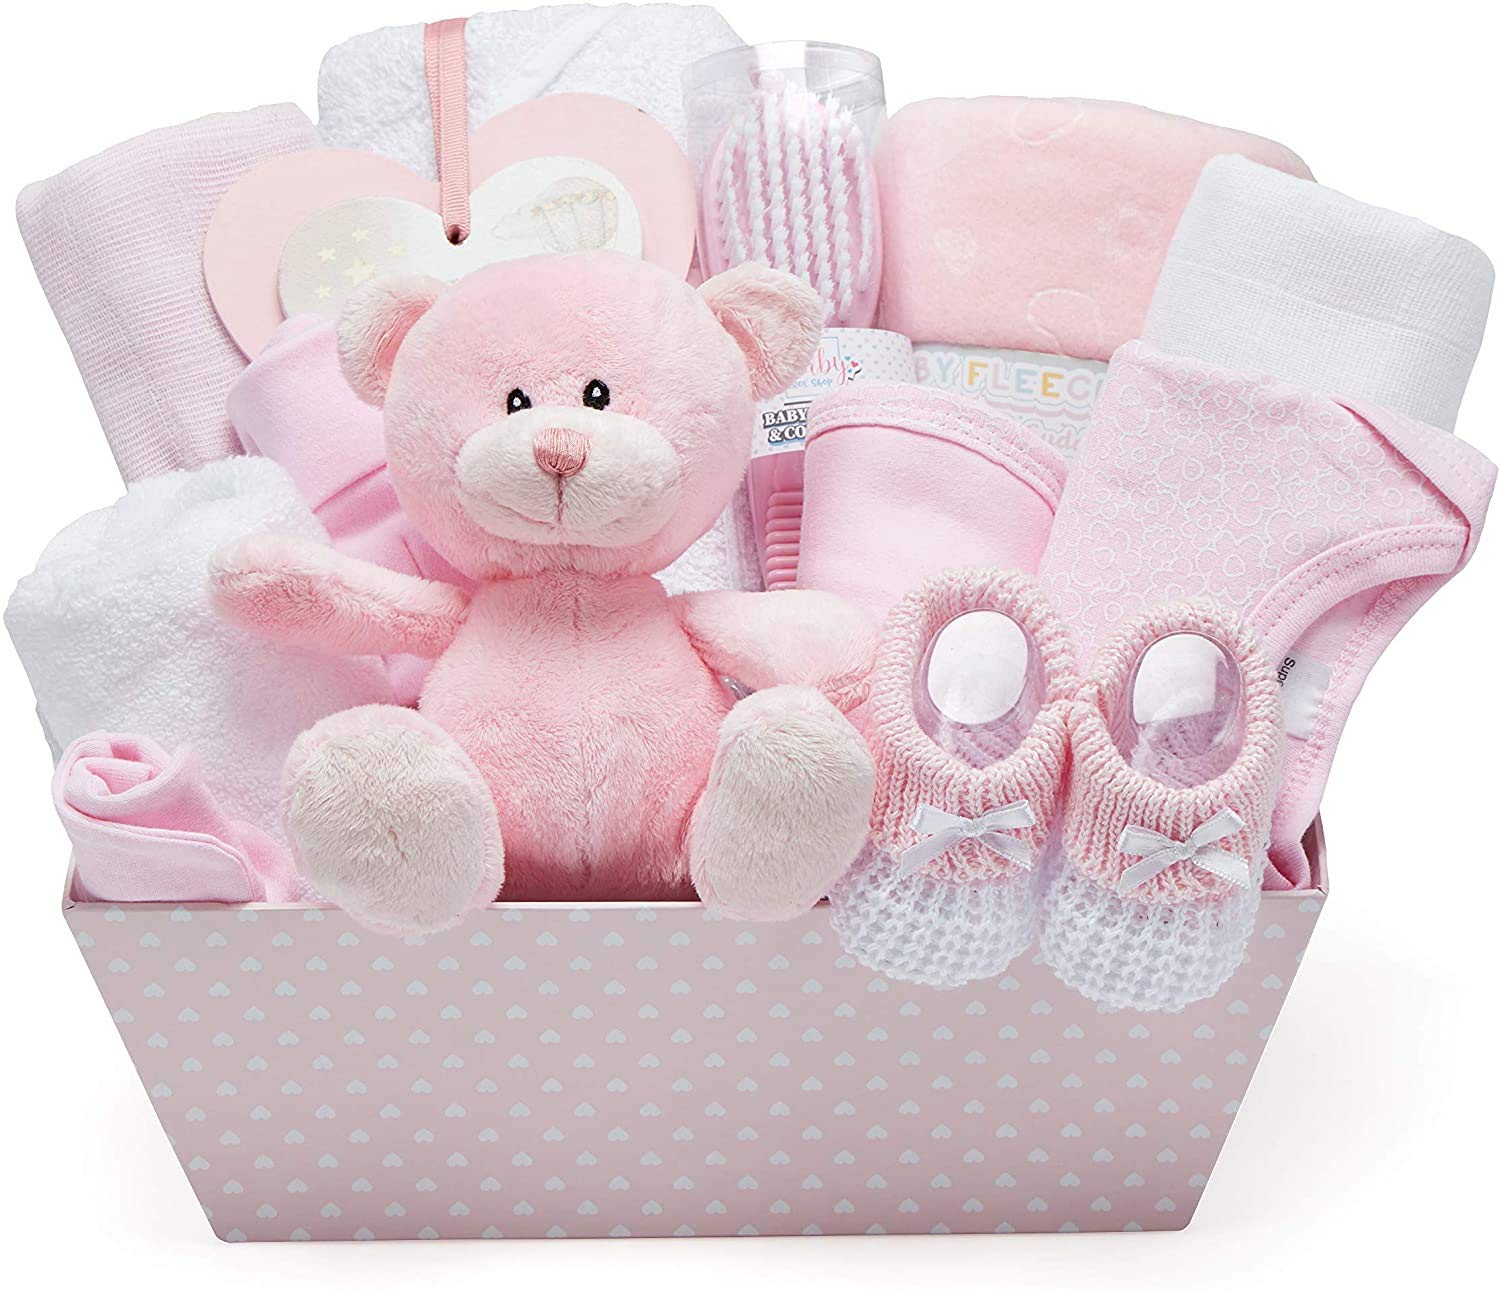 Luxury Baby Girl Gift Hamper Pink Elephant - Baby Moi